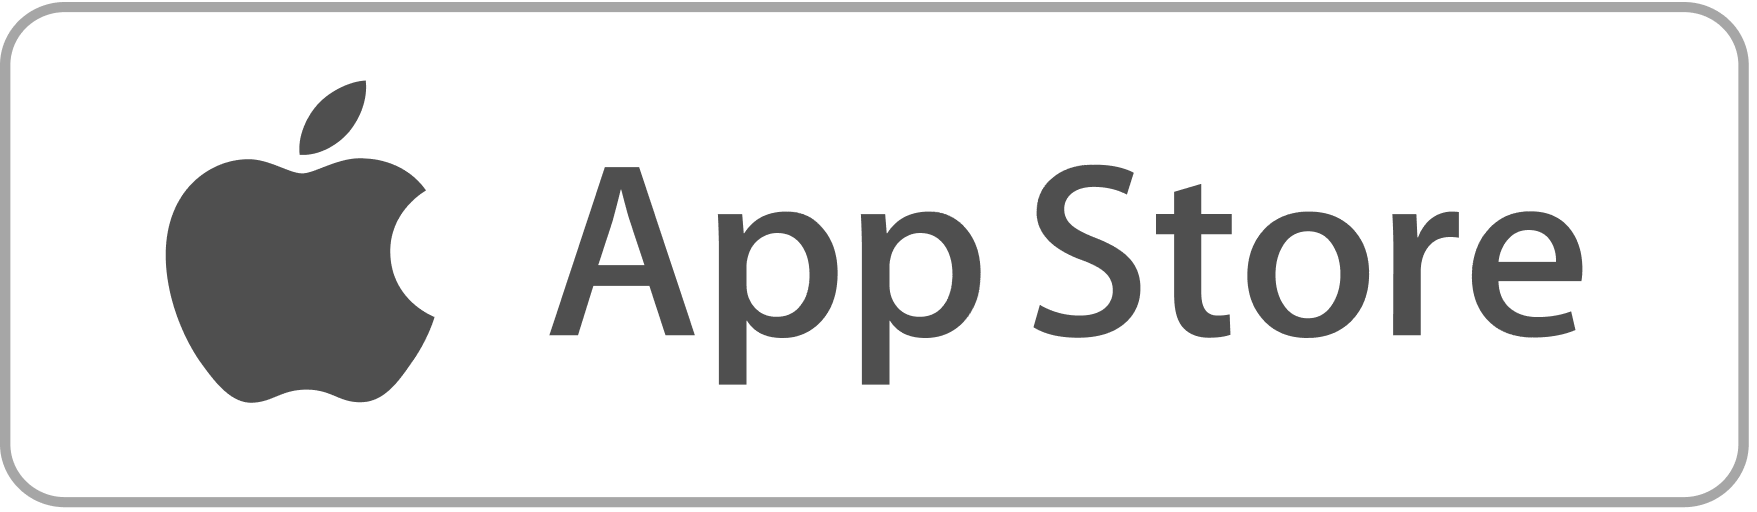 Значок app store. Apple Store логотип. Иконка приложения Apple Store. APPSTORE логотип на прозрачном фоне.